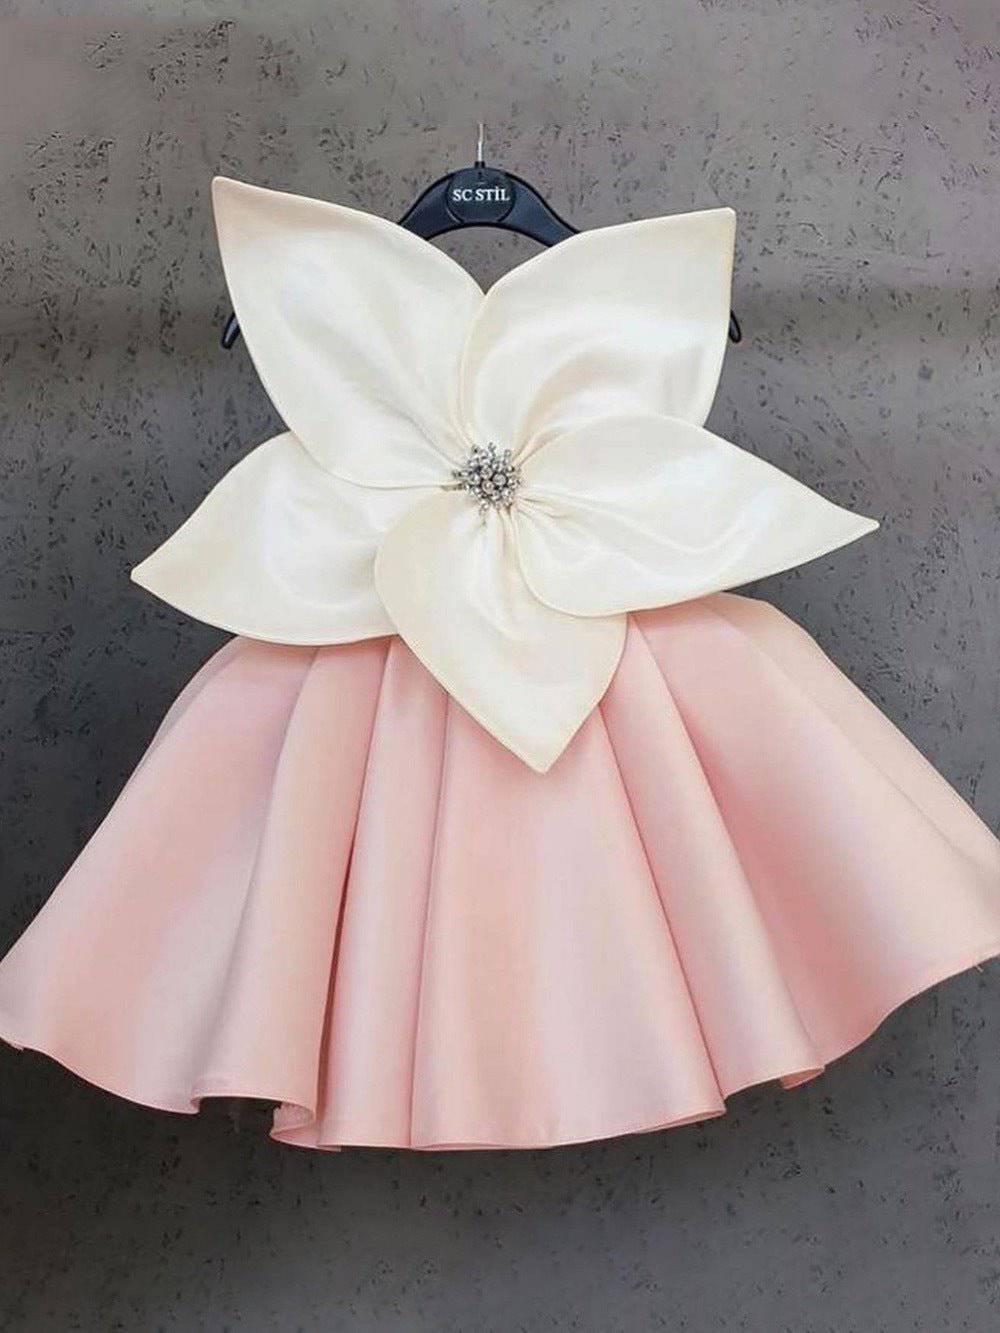 white flower girl dresses for little girls and children in pink, فستان اطفال للحفلات